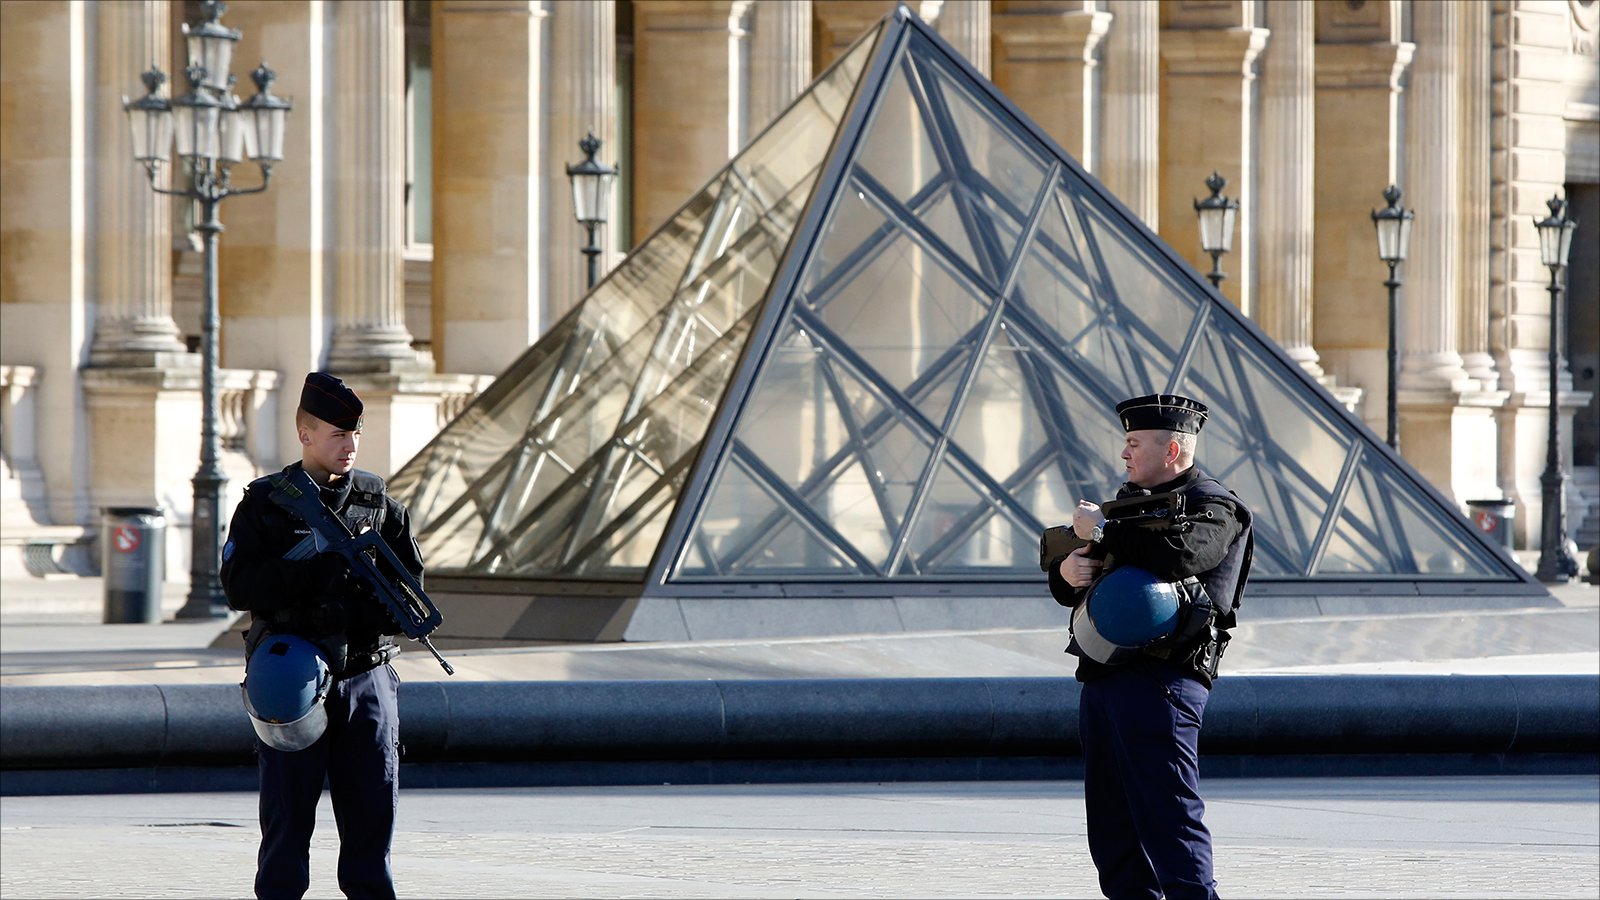 ‪الحكومة الفرنسية أعلنت حالة الطوارئ في البلاد وشددت الرقابة على الحدود‬ الحكومة الفرنسية أعلنت حالة الطوارئ في البلاد وشددت الرقابة على الحدود (الأوروبية)